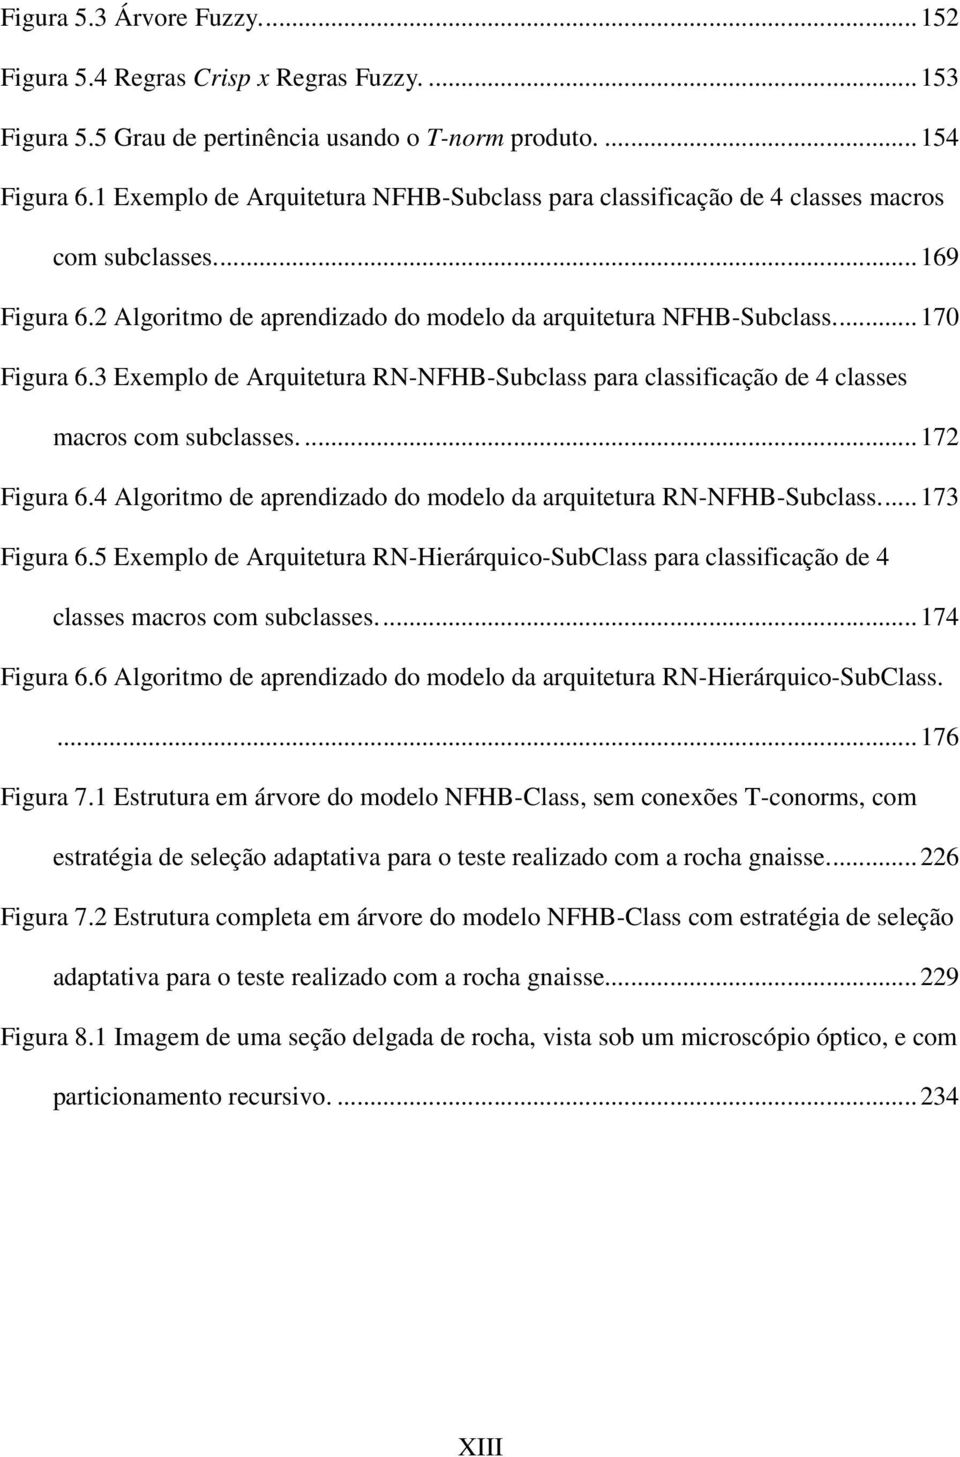 3 Exemplo de Arquitetura RN-NFHB-Subclass para classificação de 4 classes macros com subclasses.... 172 Figura 6.4 Algoritmo de aprendizado do modelo da arquitetura RN-NFHB-Subclass.... 173 Figura 6.